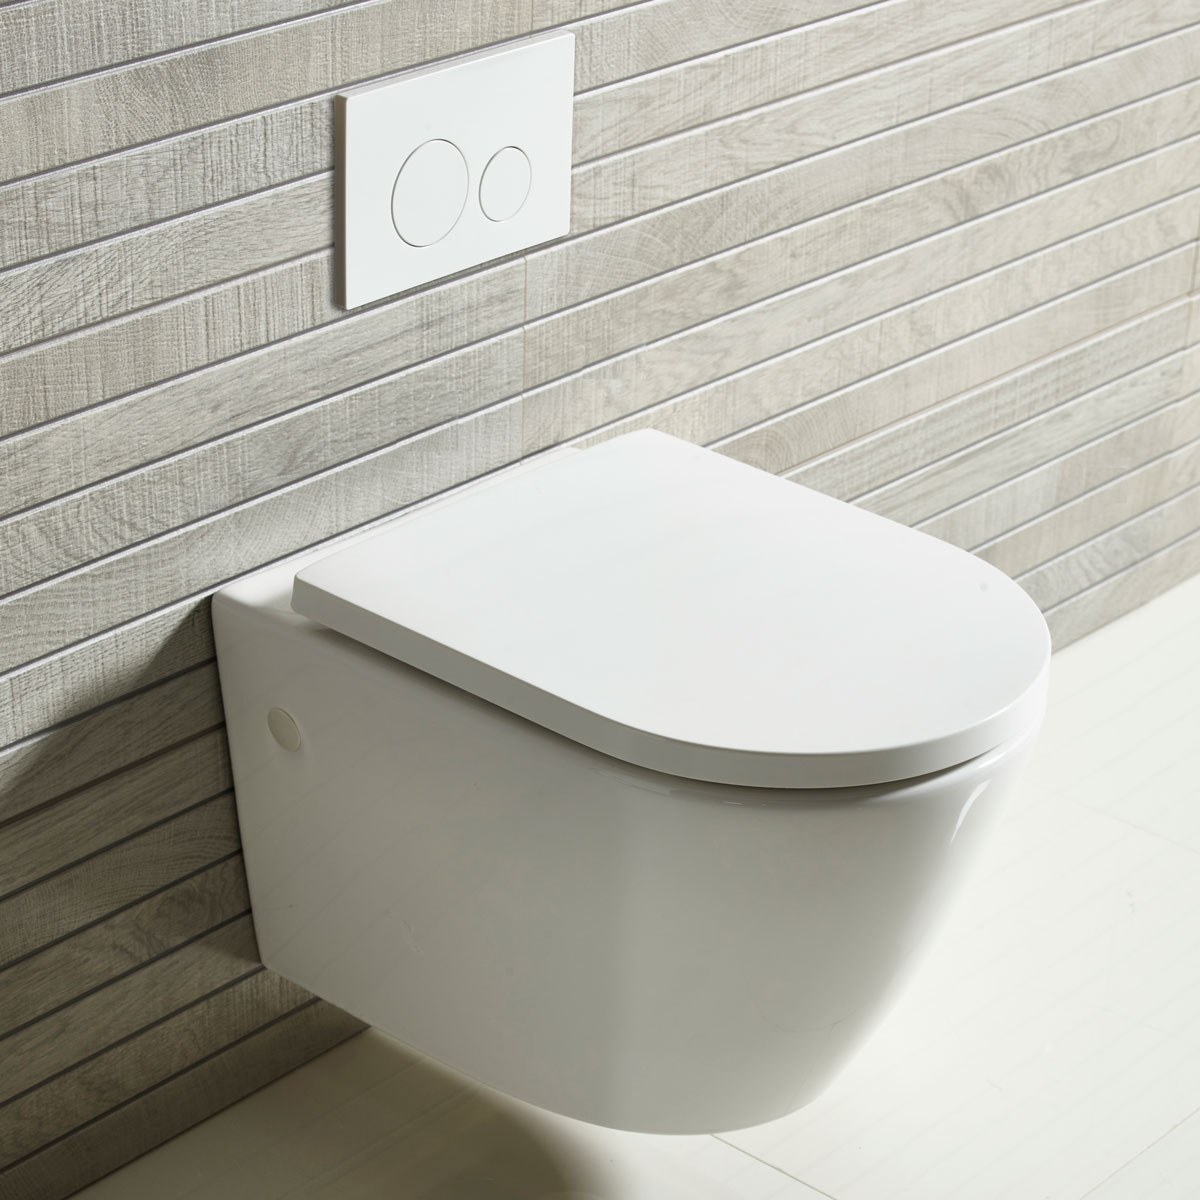 Analisis Sederhana Karakteristik Toilet yang Digantung di Dinding